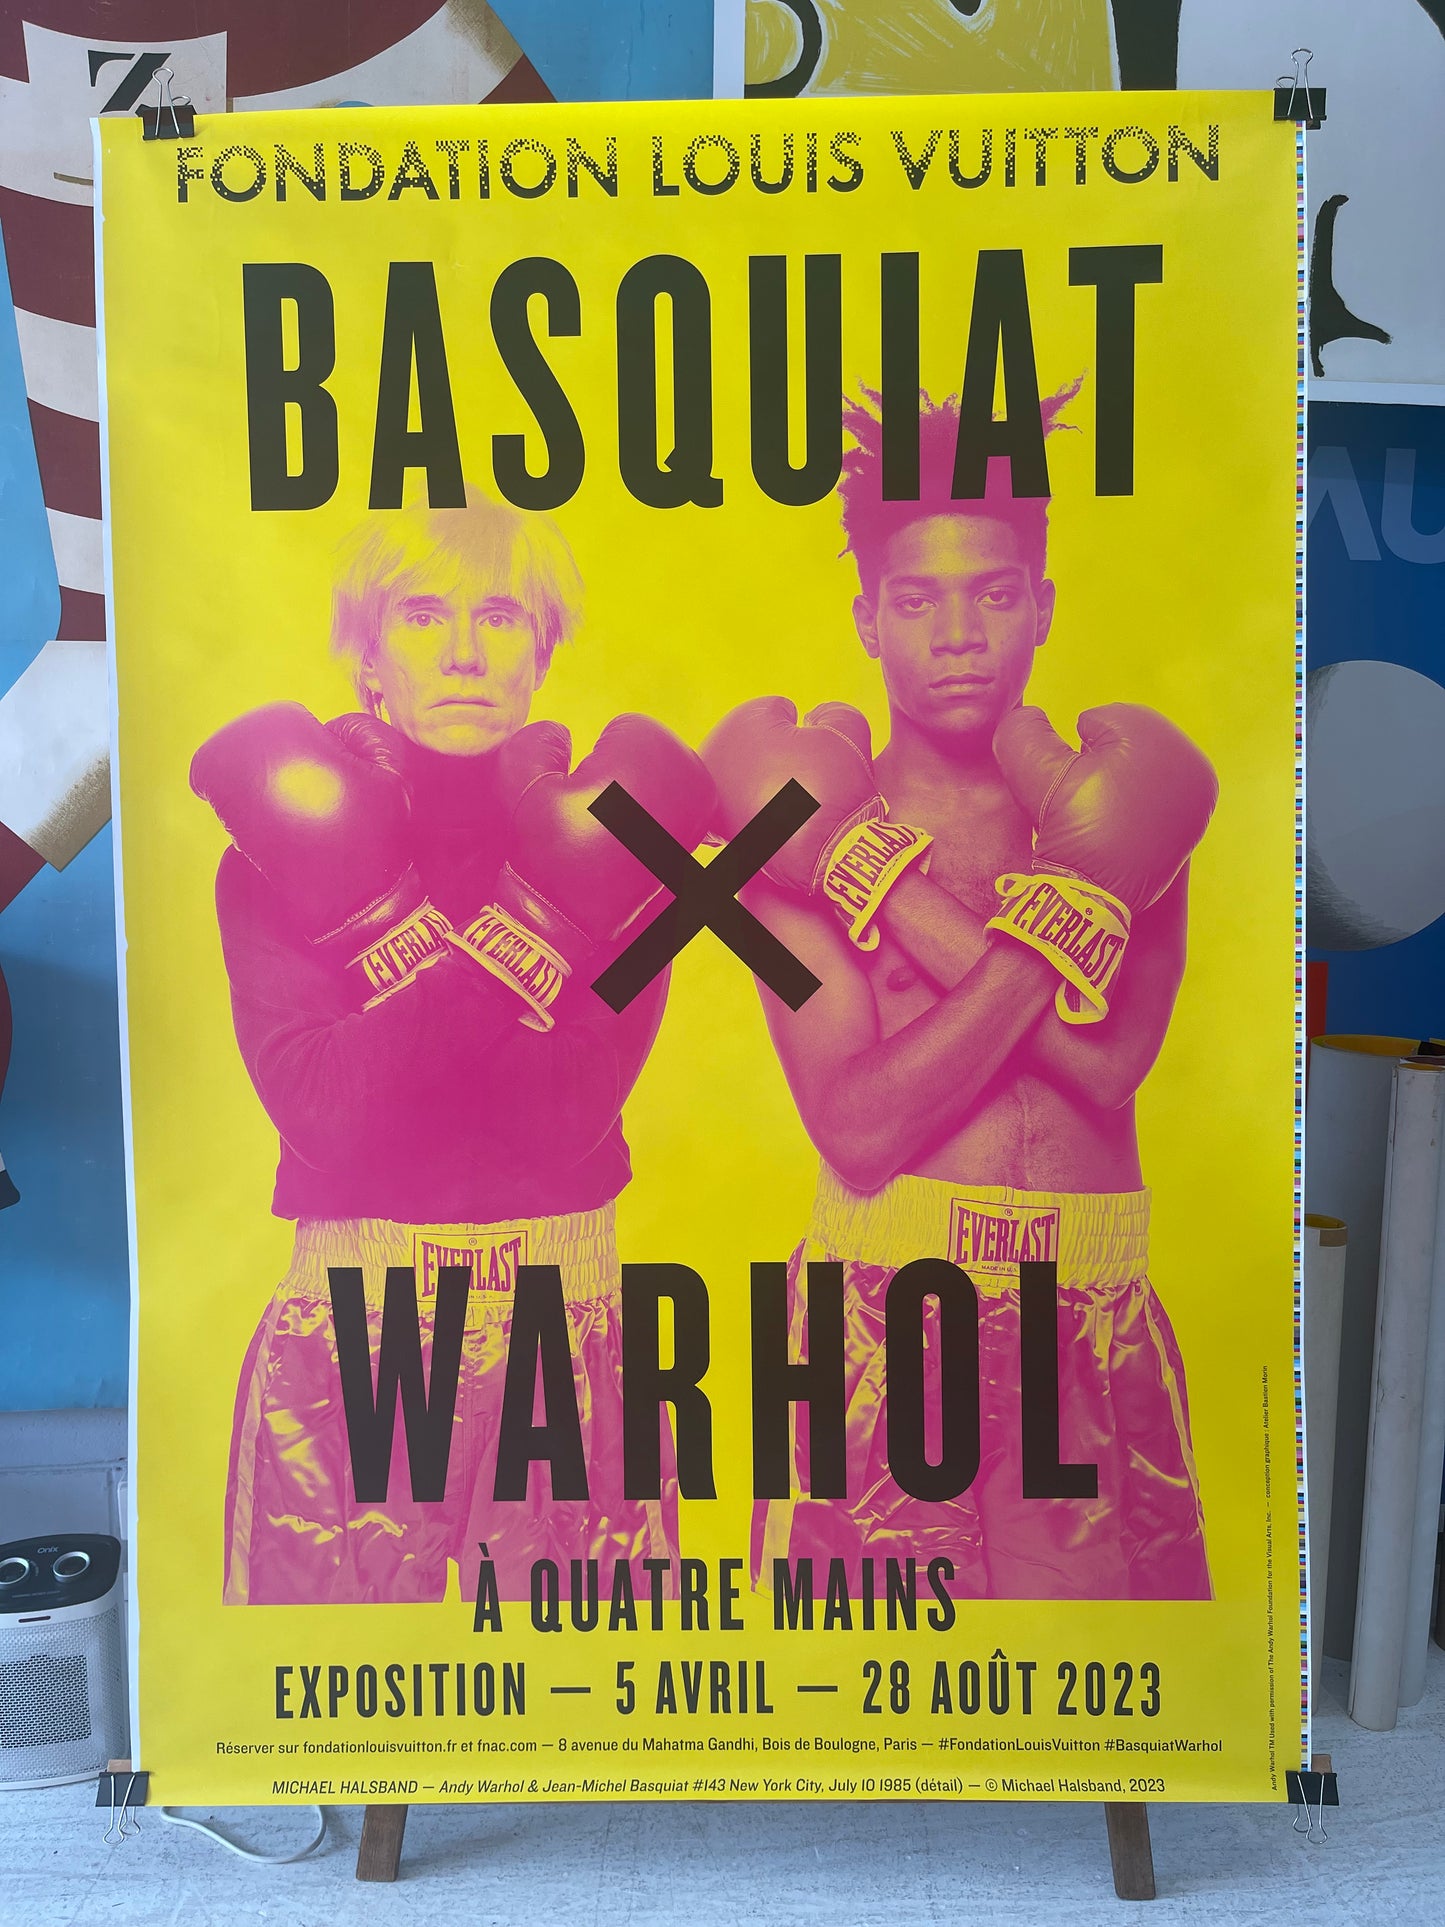 Basquiat x Warhol Exhibition Poster